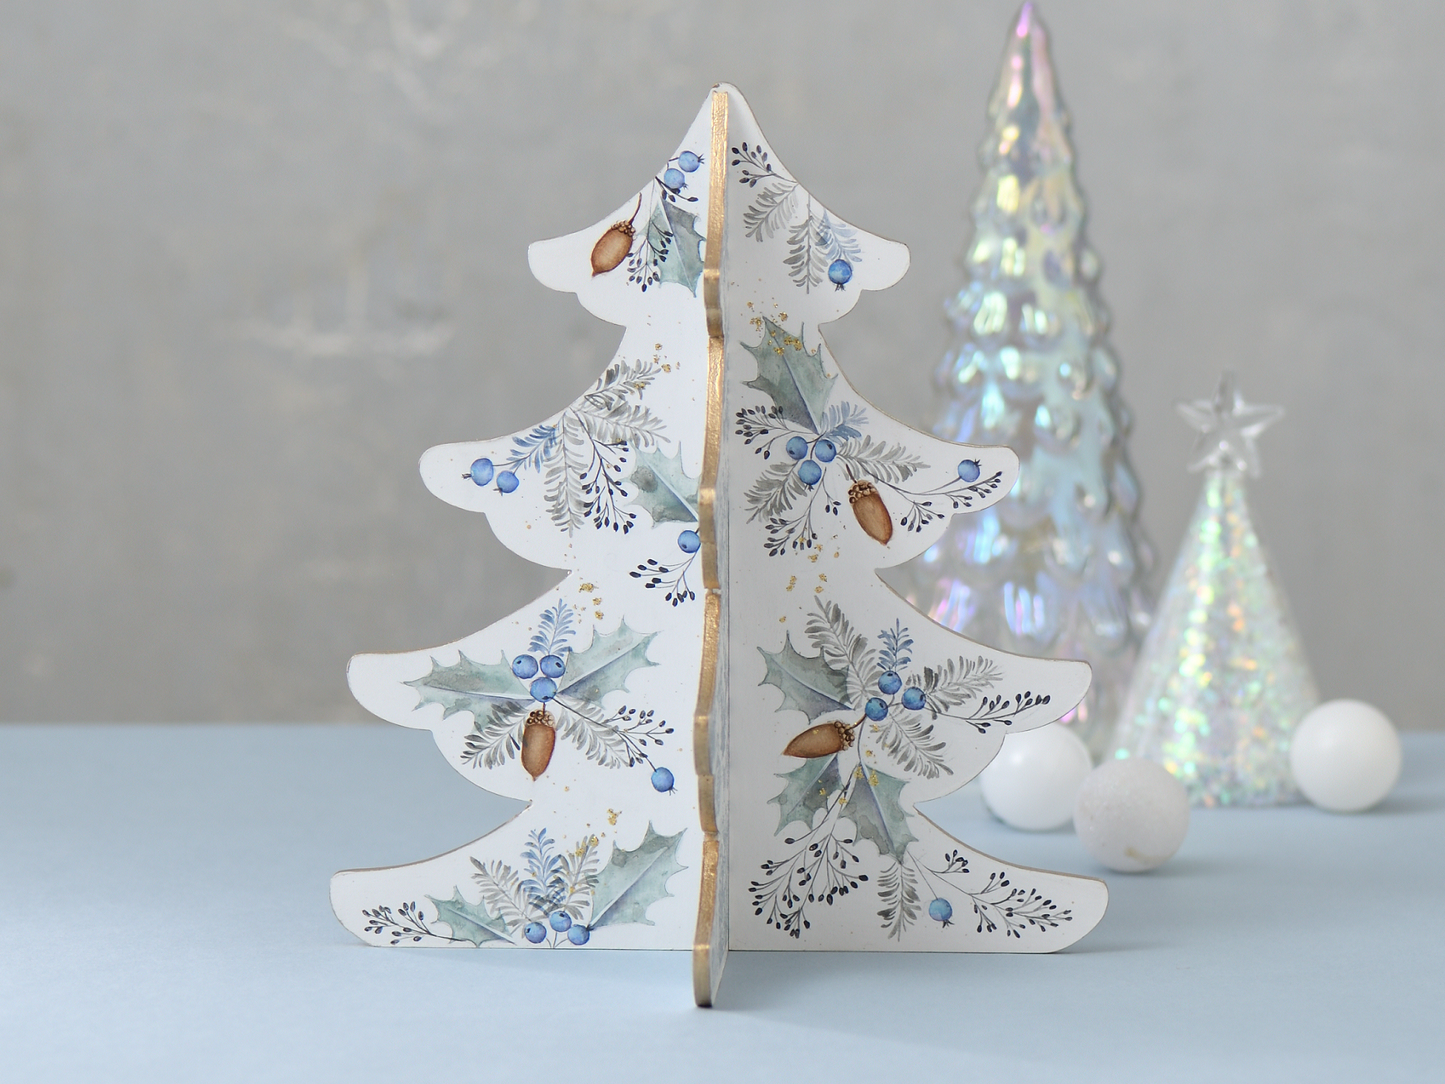 
                  
                    川島詠子の「水彩画風のにじみを楽しむ ヒイラギとドングリのクリスマスツリー」を描く
                  
                